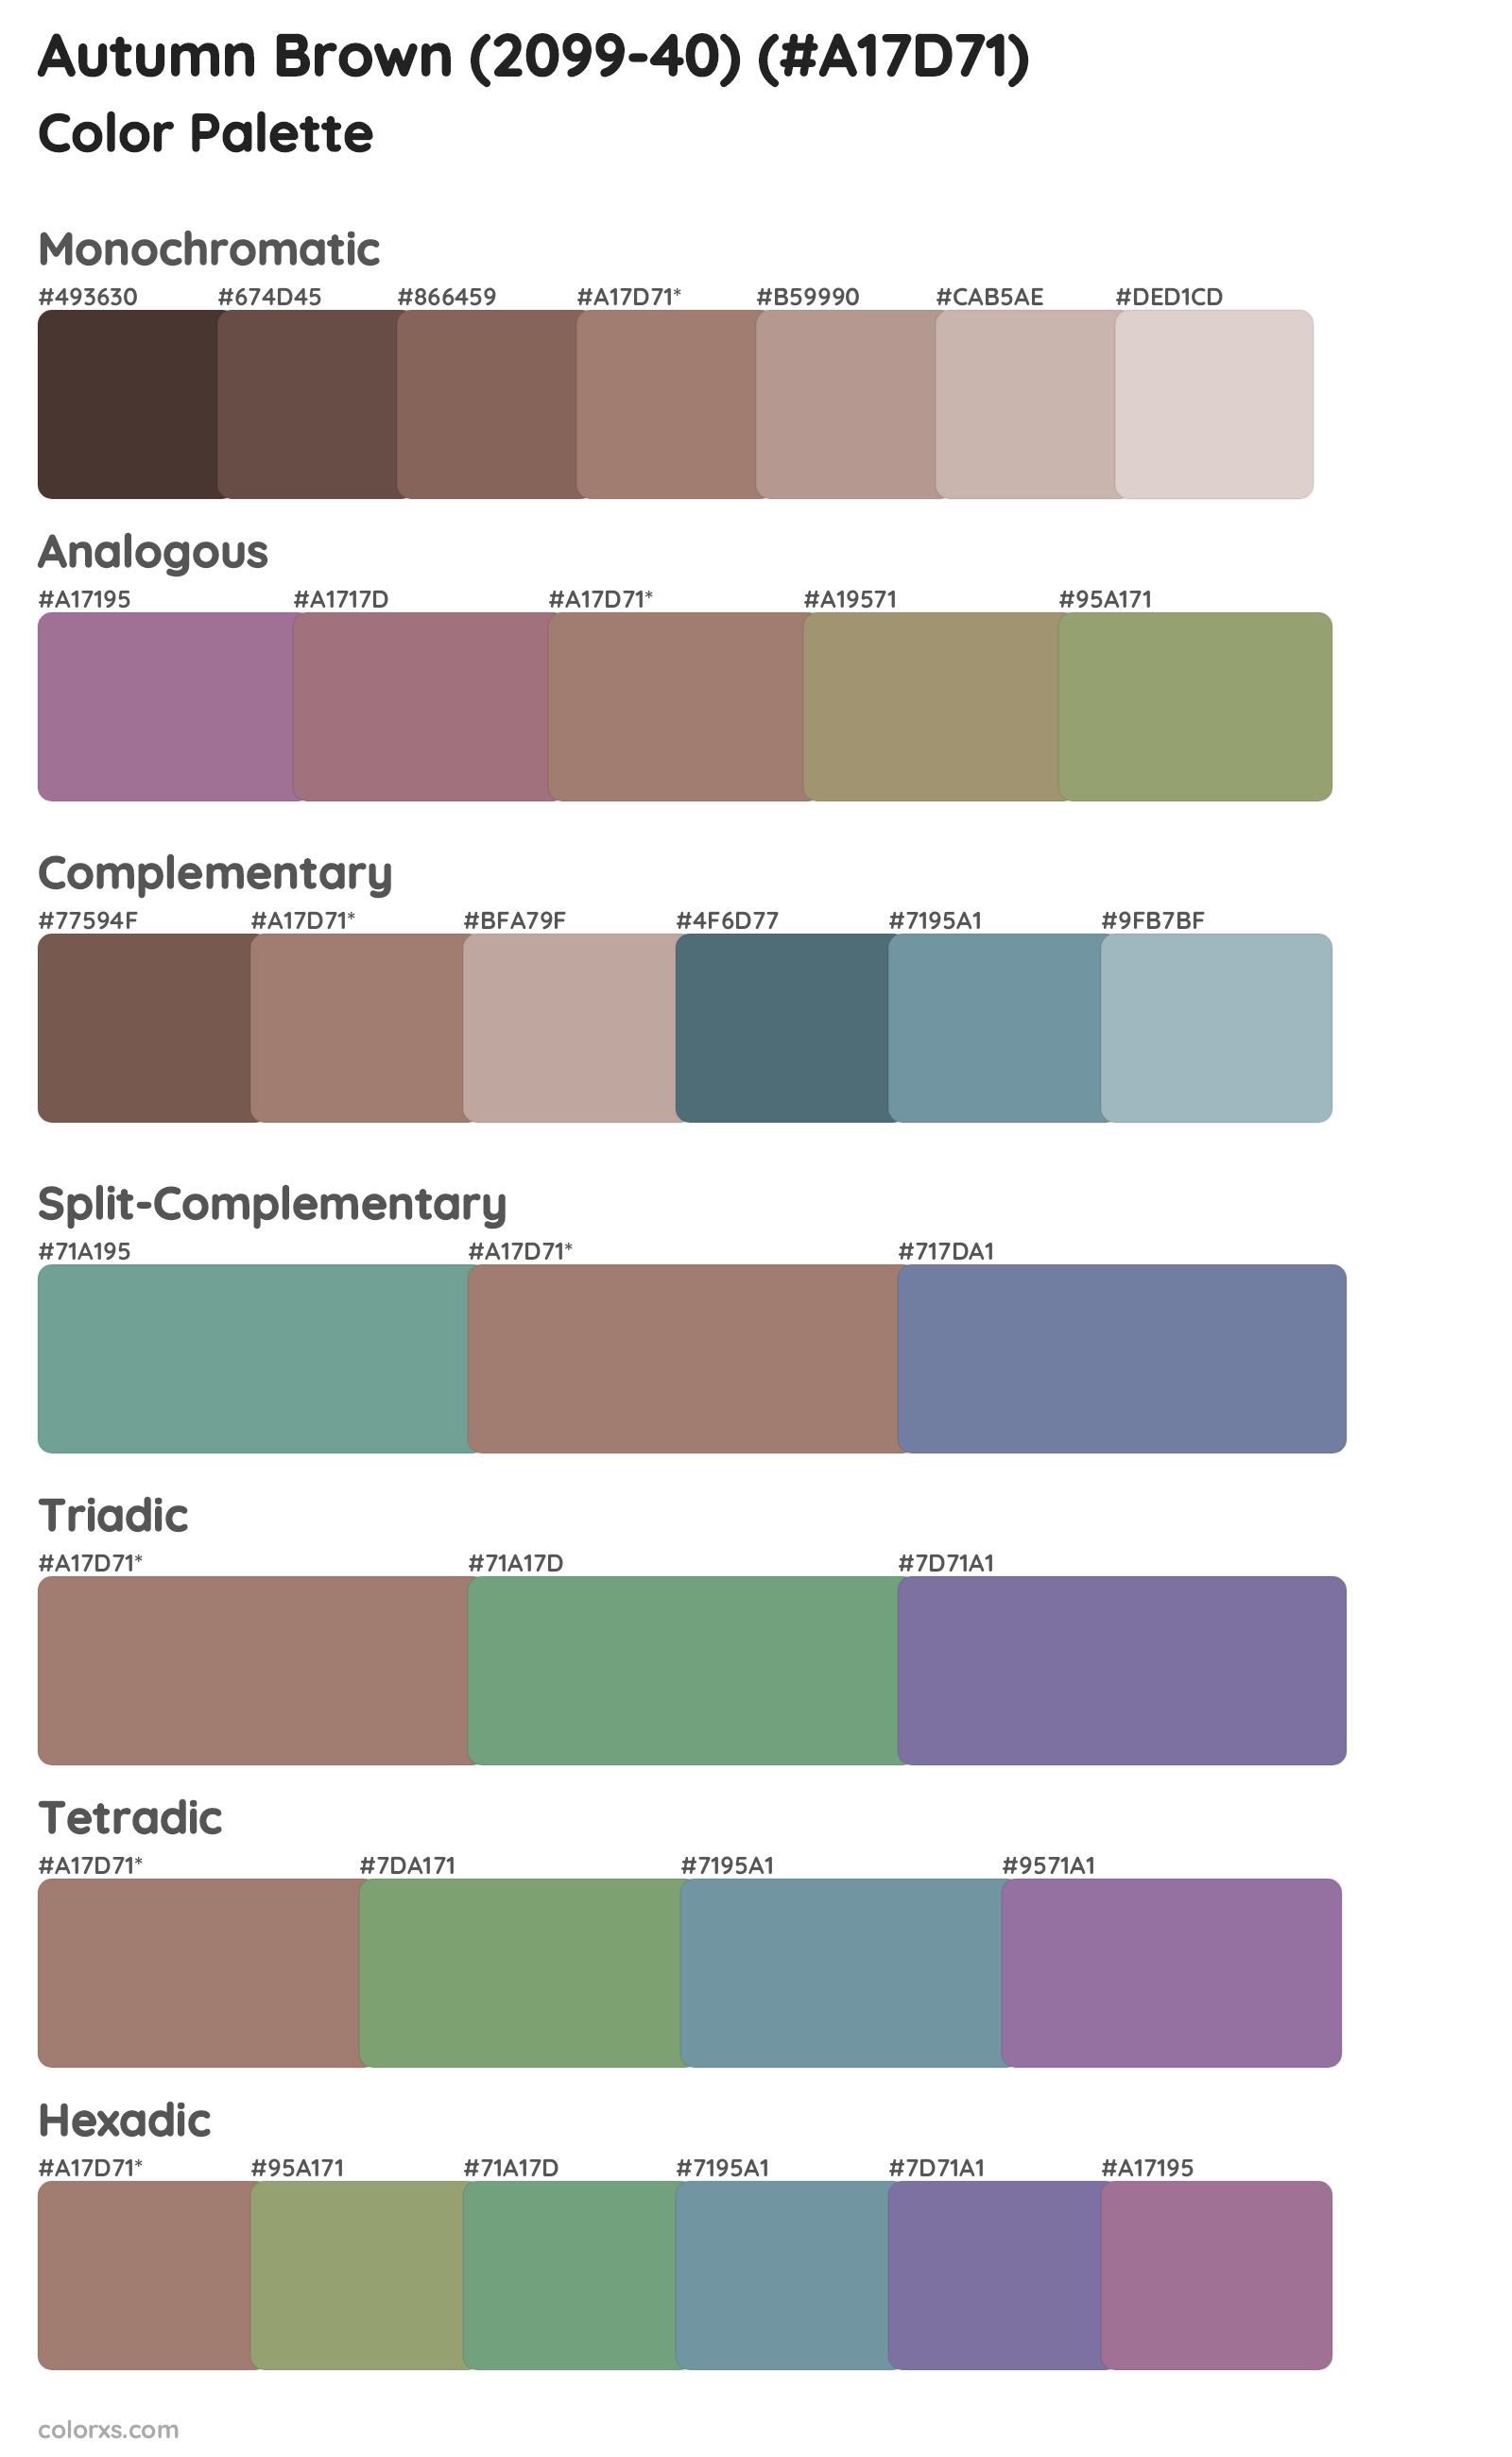 Autumn Brown (2099-40) Color Scheme Palettes